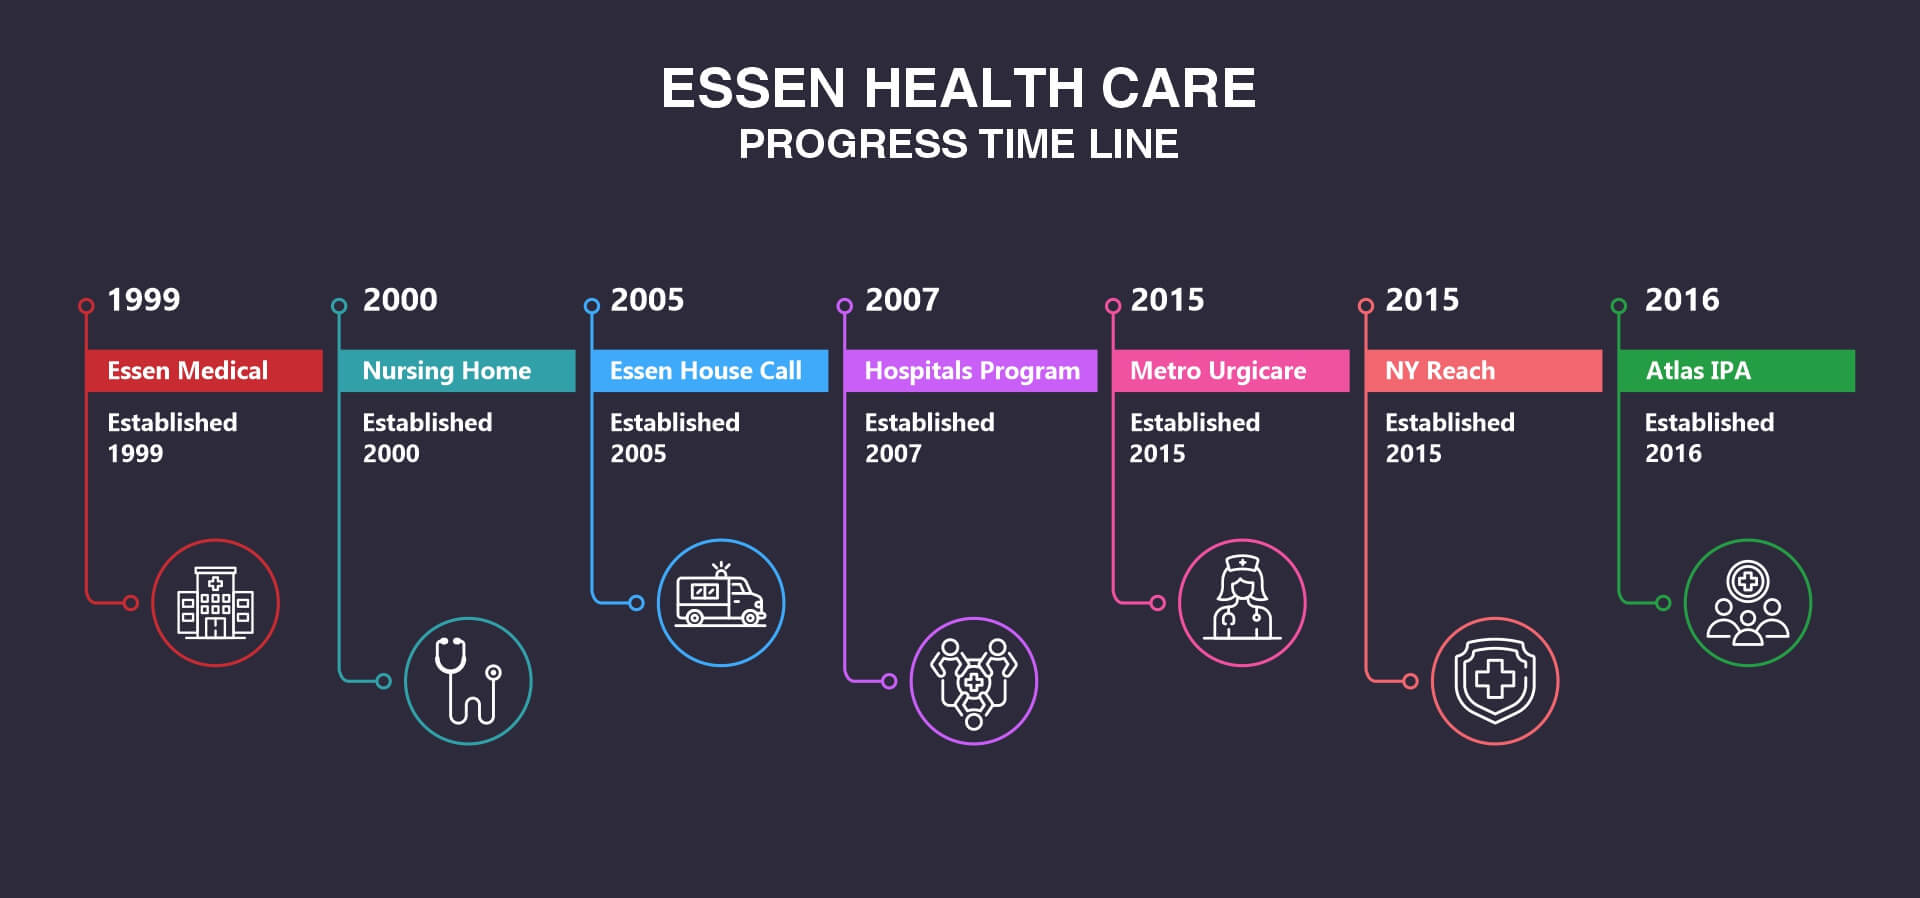 Essen Health Progress Timeline